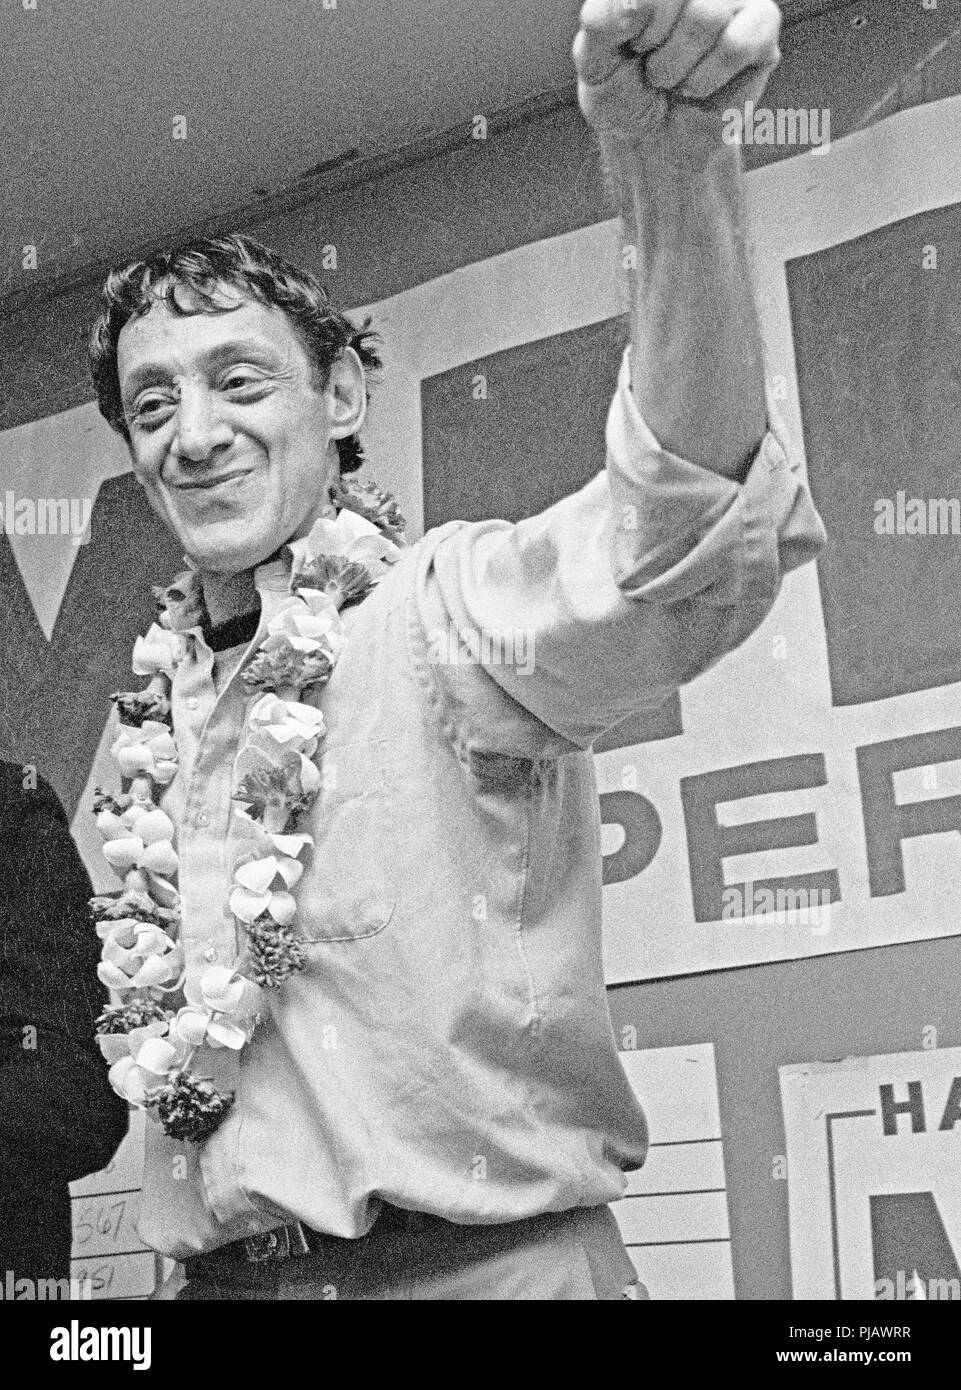 Il candidato gay per l'ufficio del Supervisore di San Francisco, Harvey Milk, celebra la vittoria nella notte delle elezioni nel suo negozio di macchine fotografiche di strada di Castro a San Francisco. 1977 Foto Stock